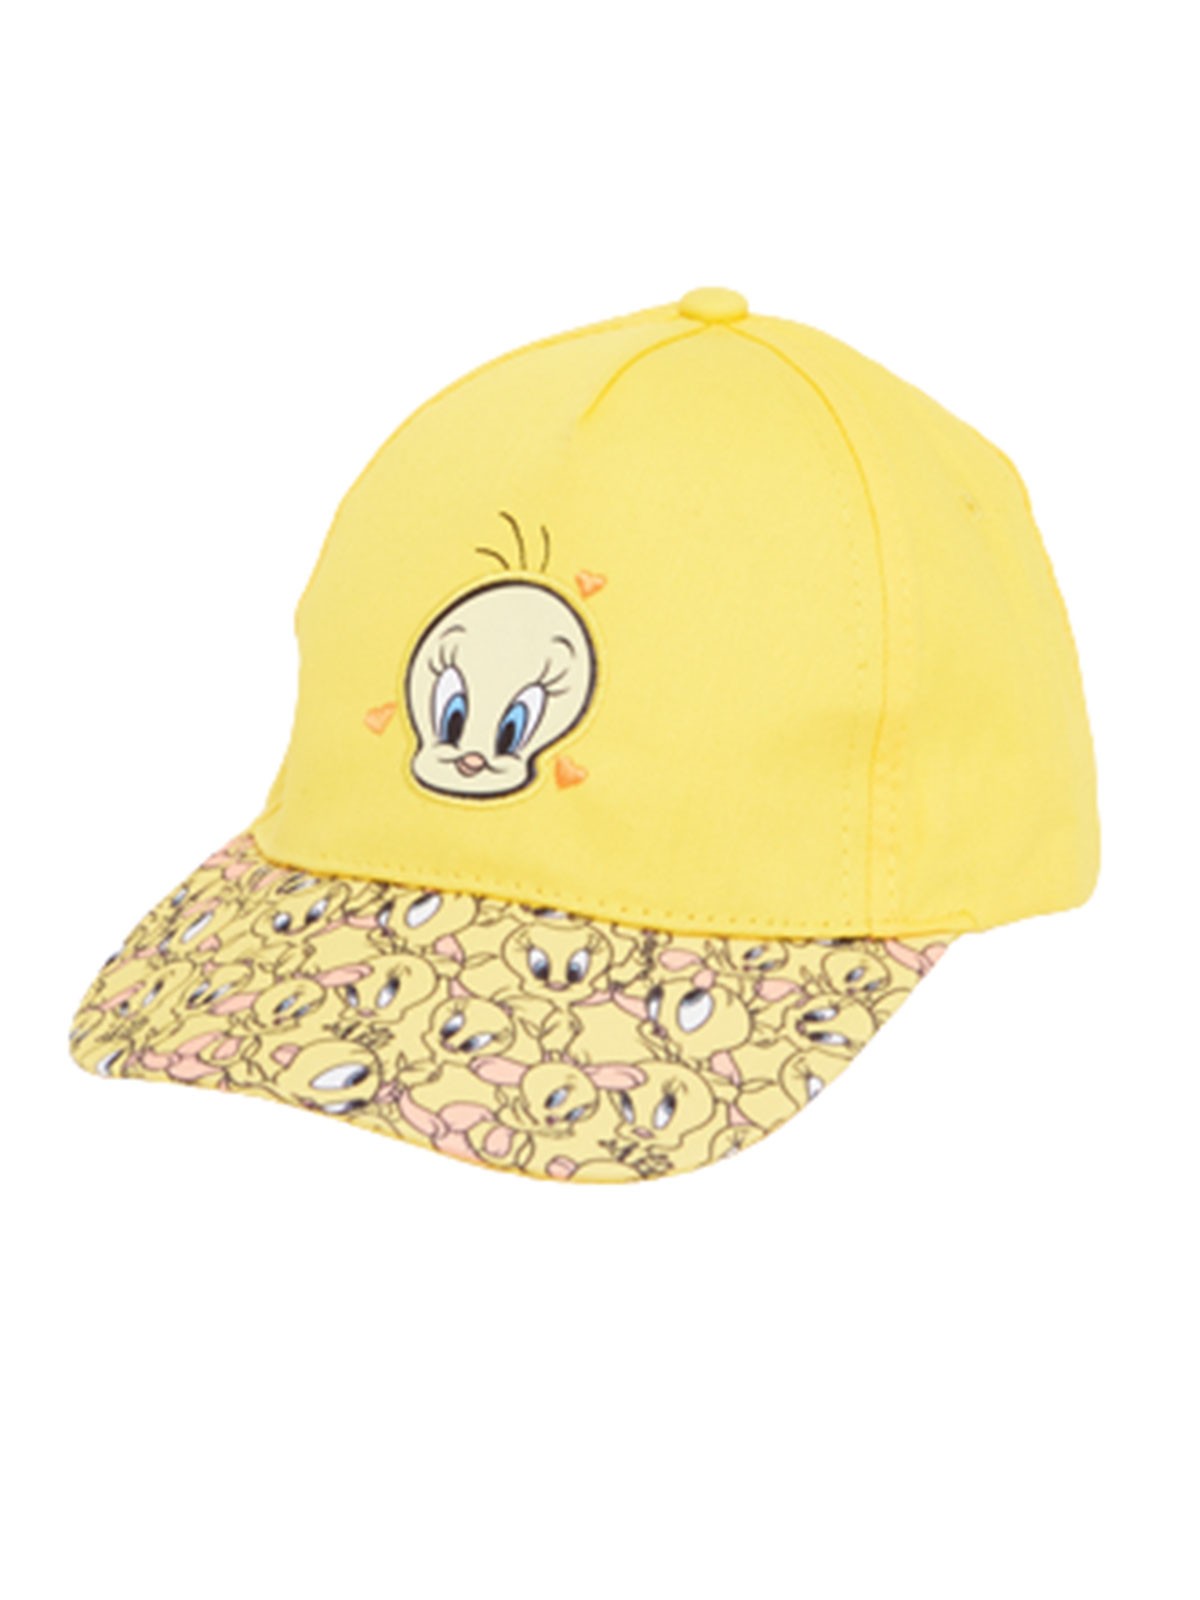 Titi Cap with visor